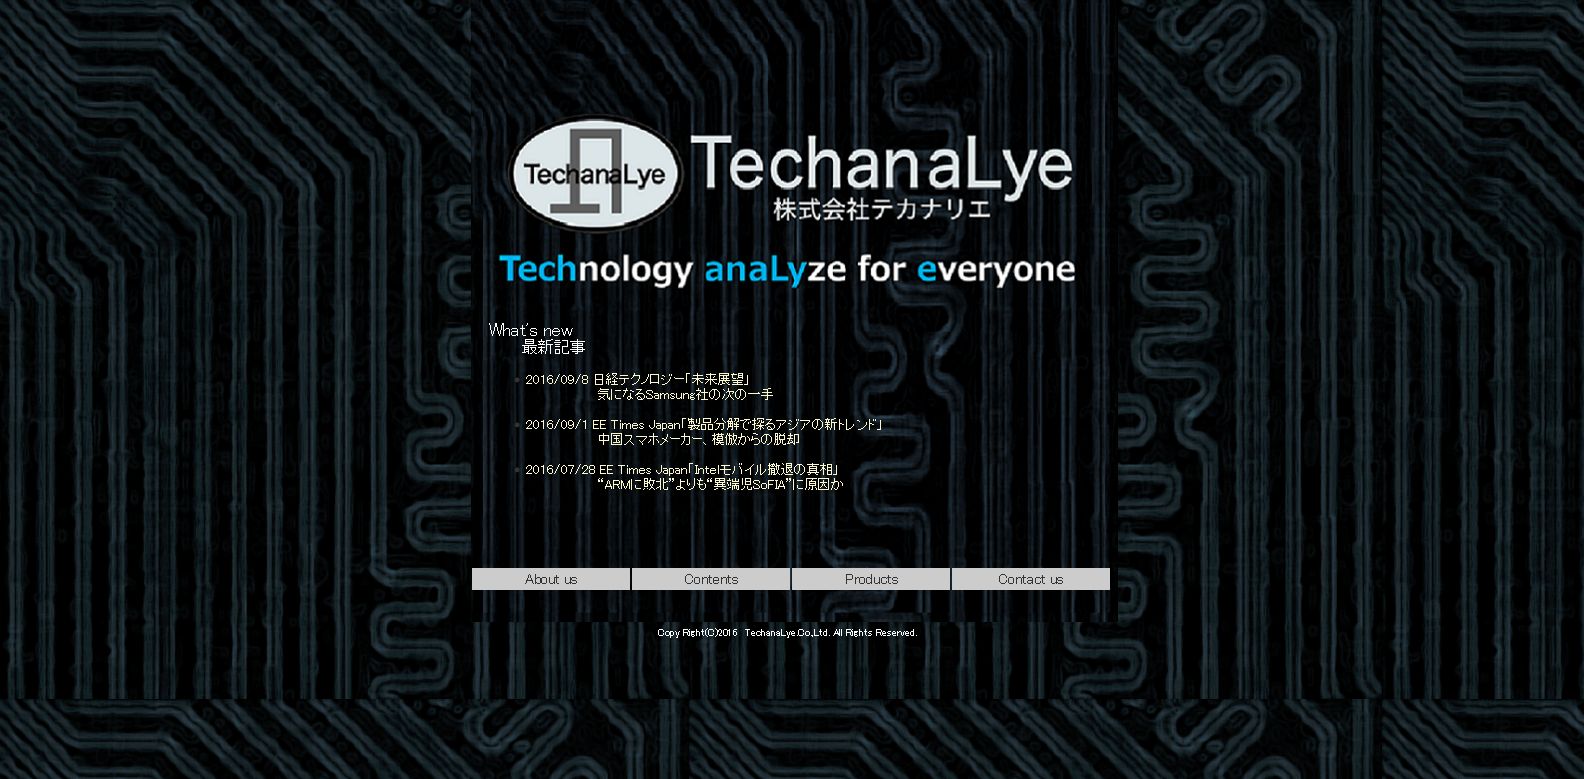 Techanalye,Ltd